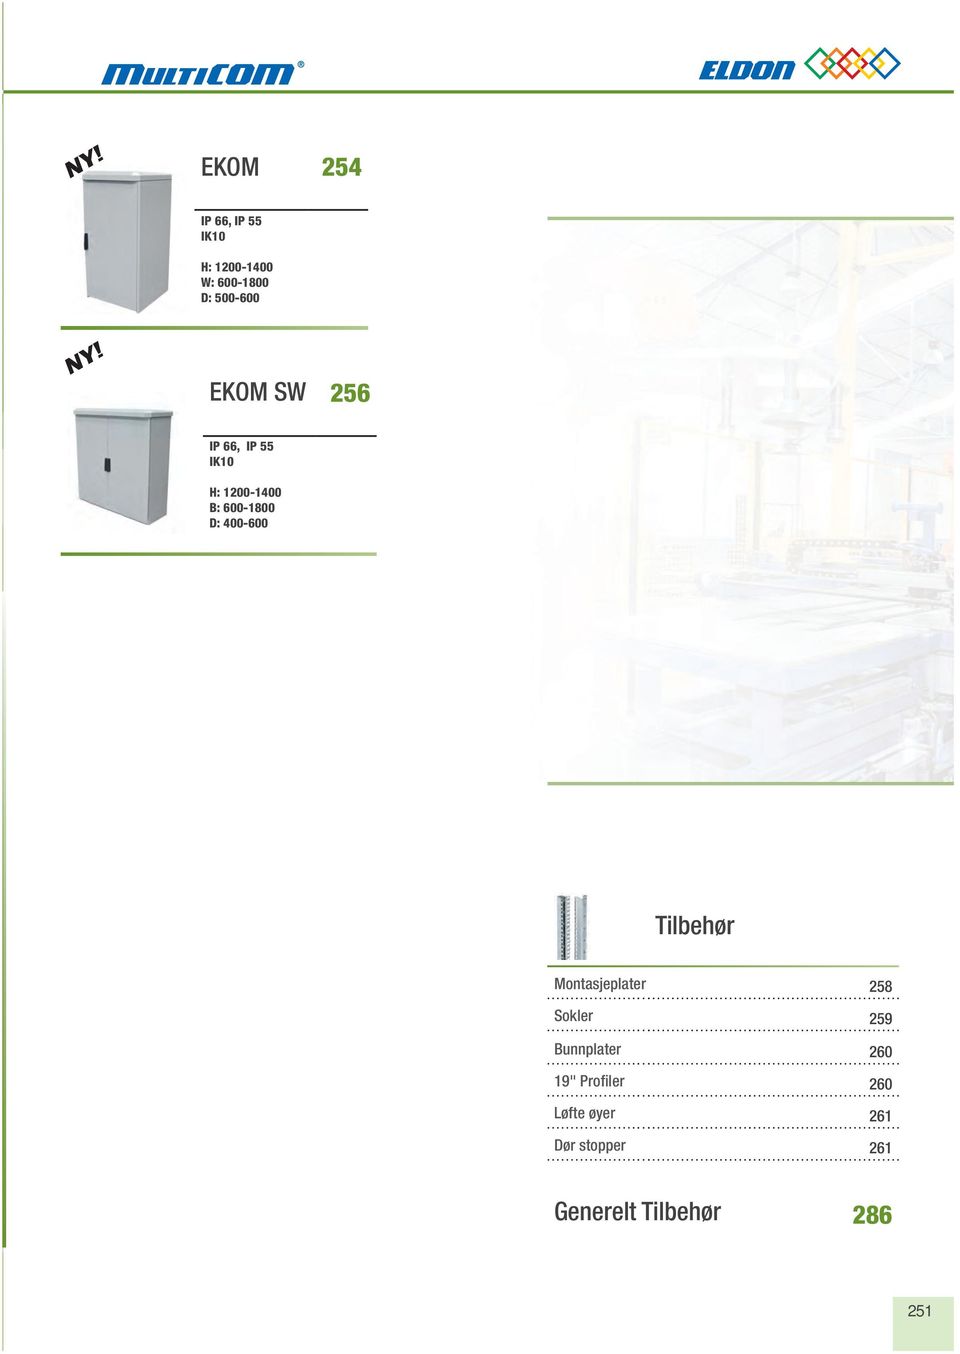 400-600 Tilbehør Montasjeplater Sokler Bunnplater 19" Profiler